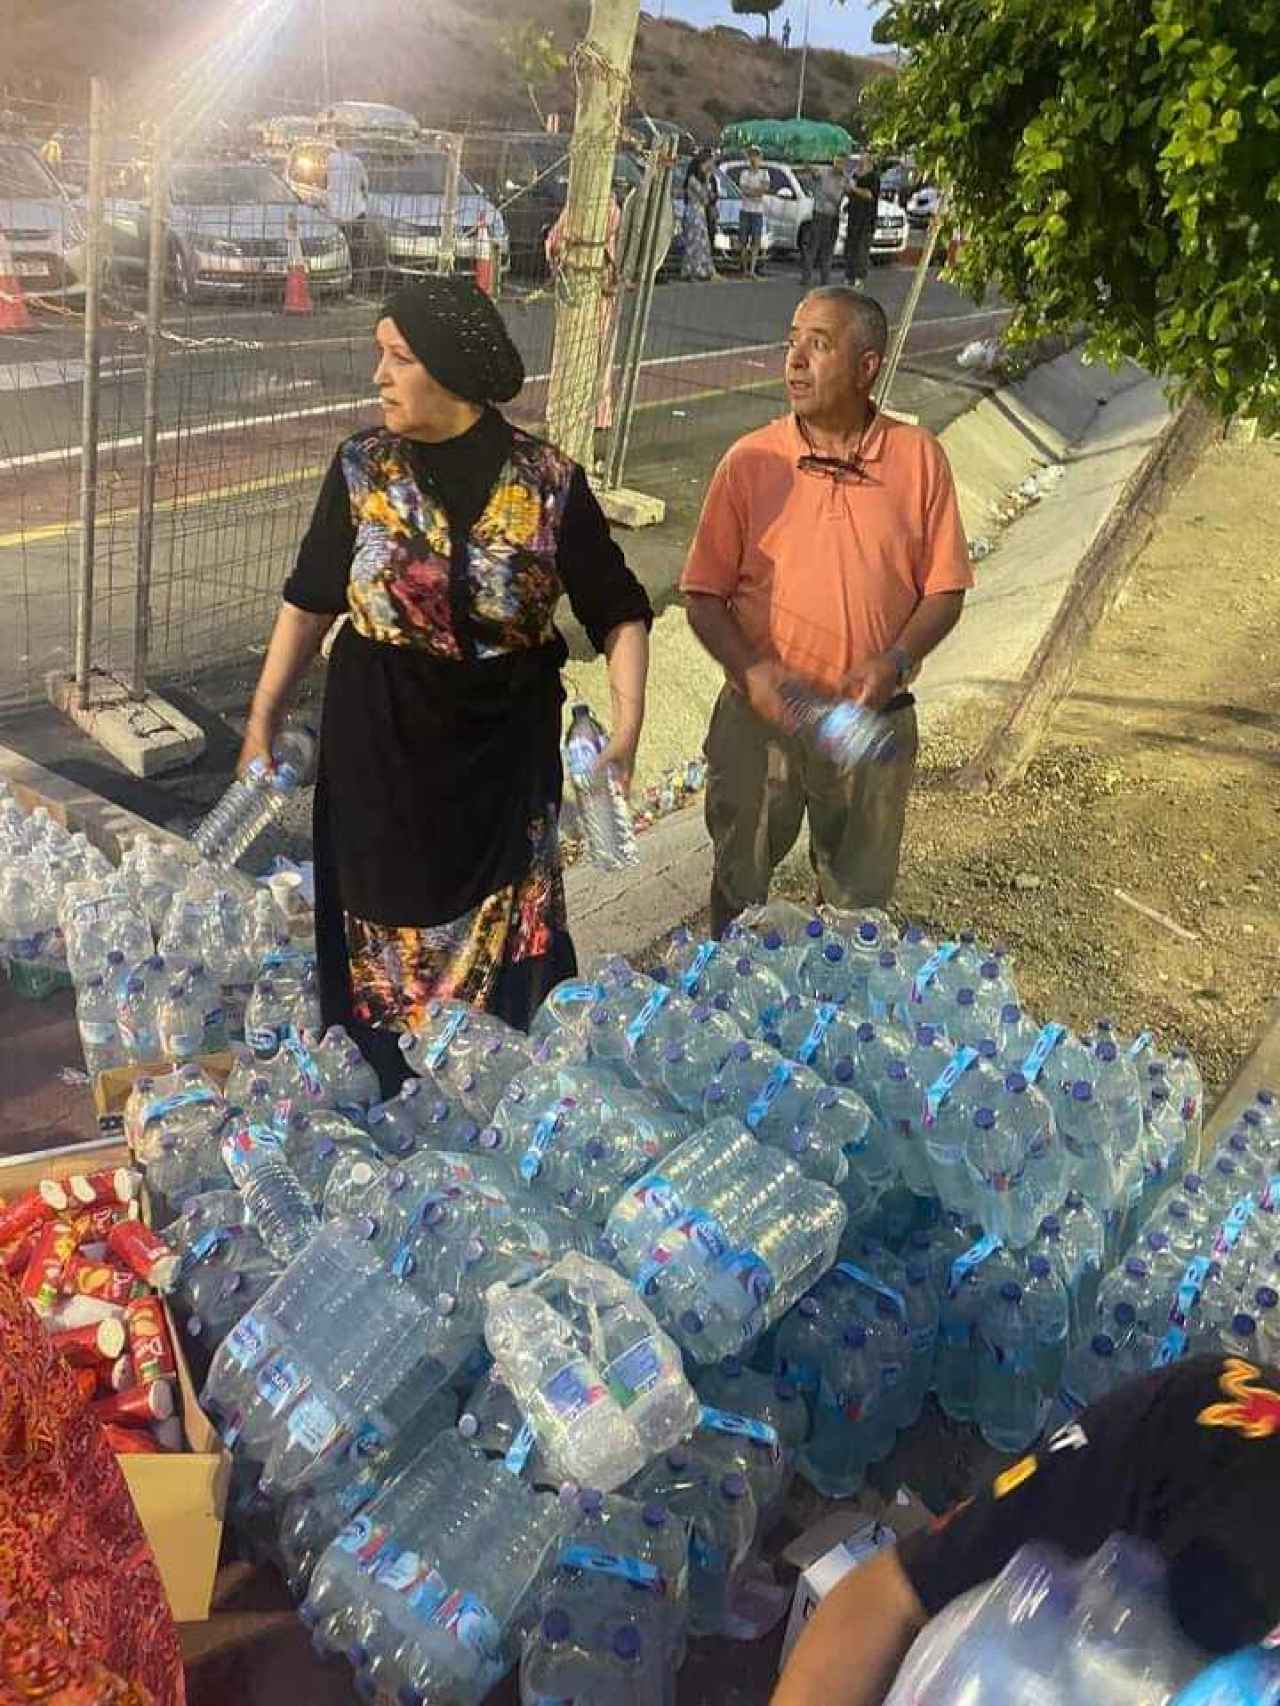 Sabah repartiendo agua a las personas que esperan en la frontera.